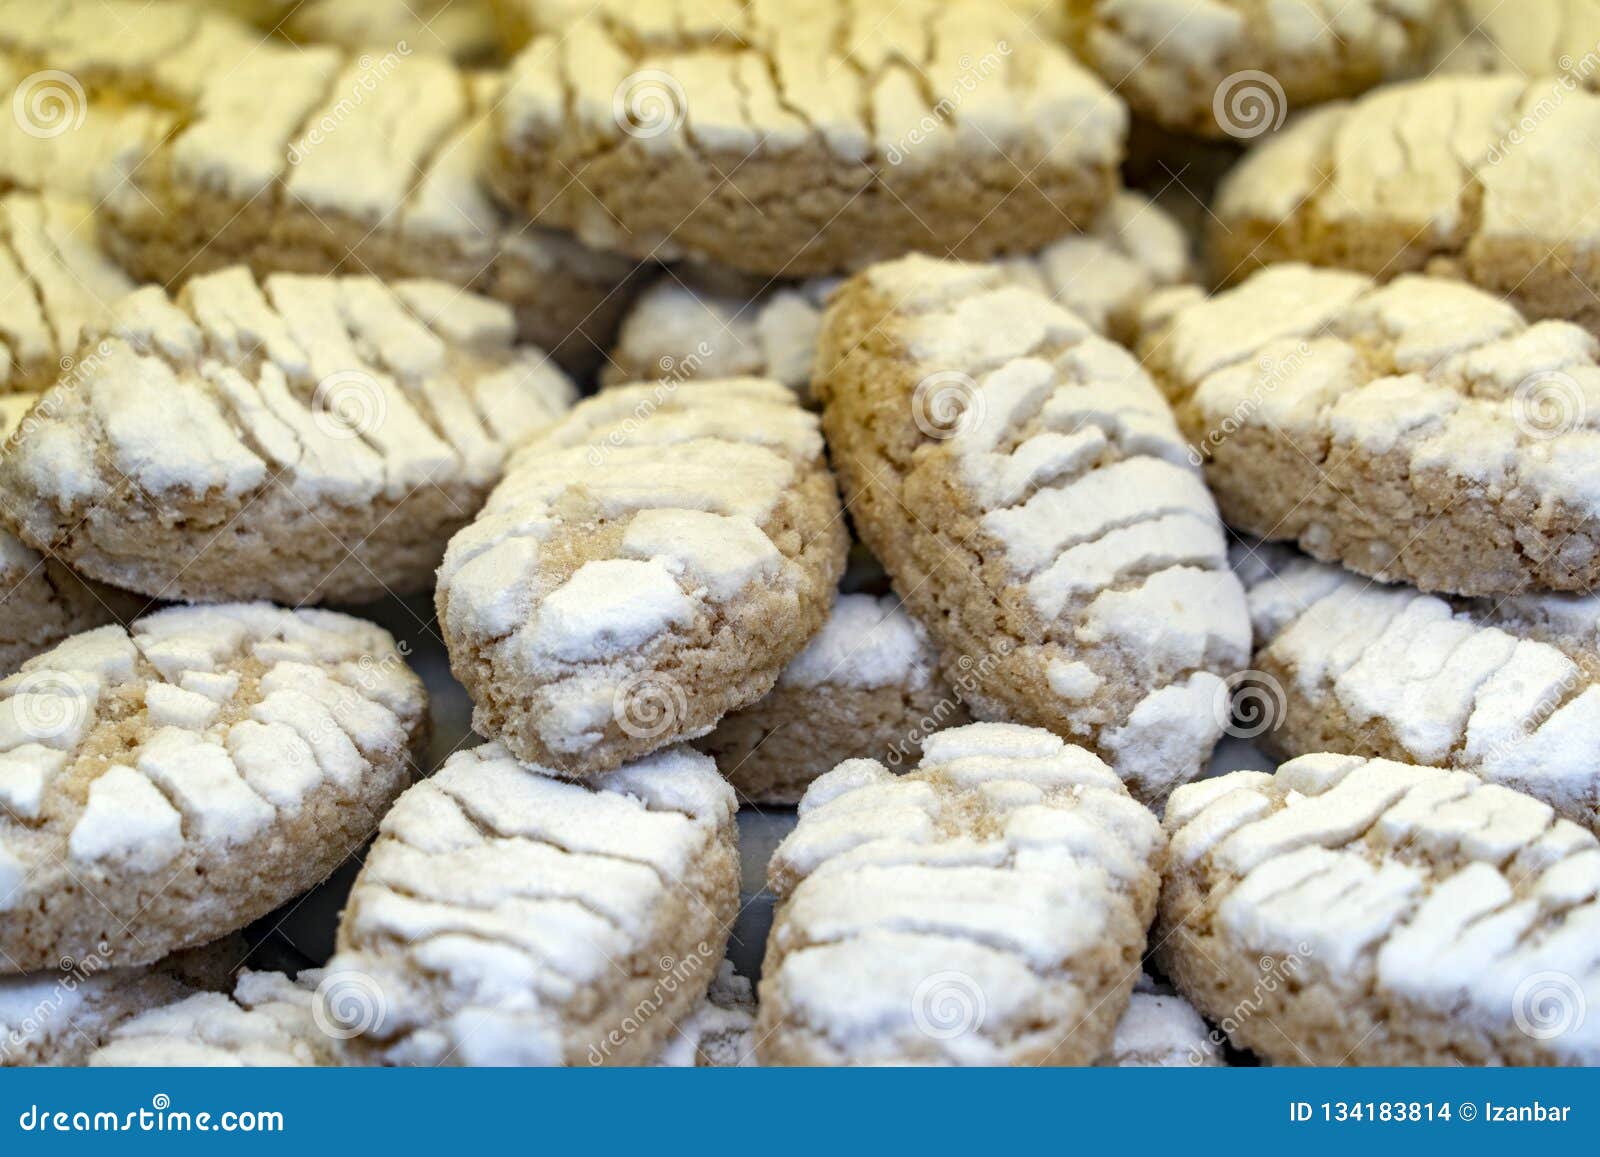 Ricciarelli - Délicieux biscuits Italiens aux amandes 